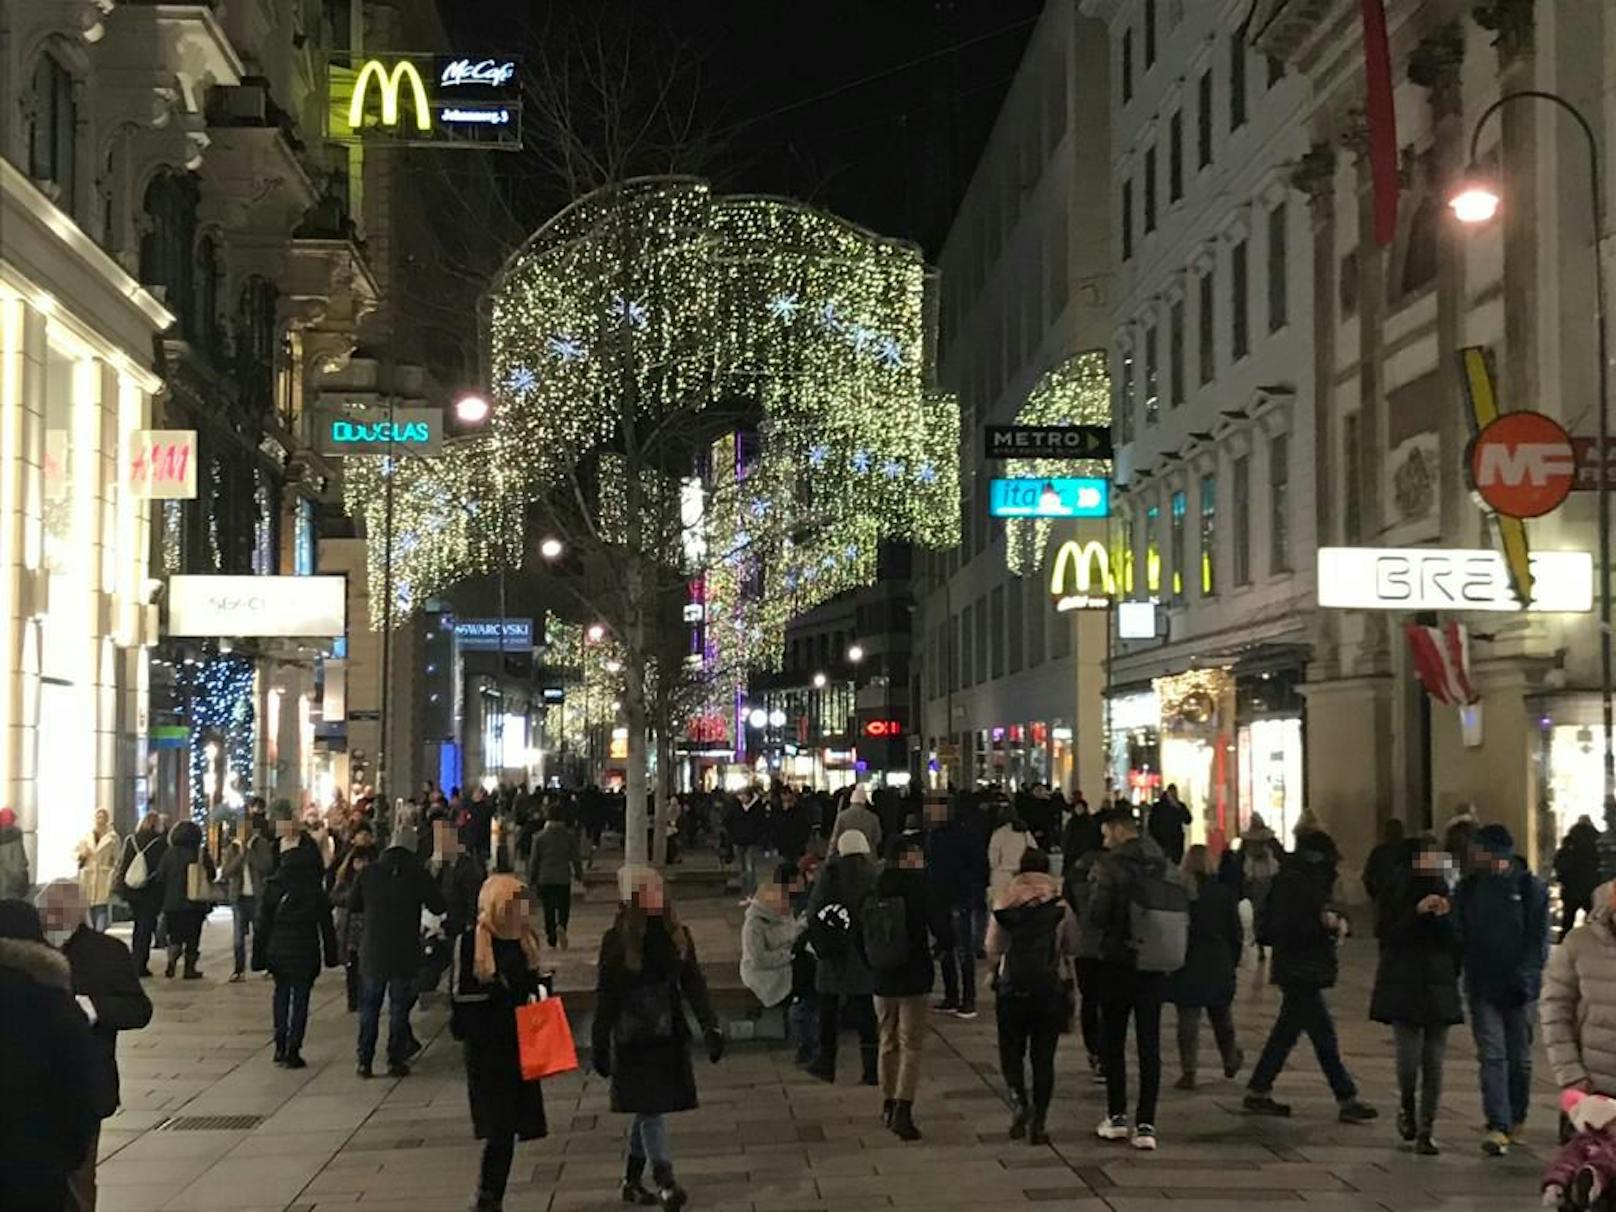 Am Sonntag herrschte Weihnachtsstimmung in Wien.